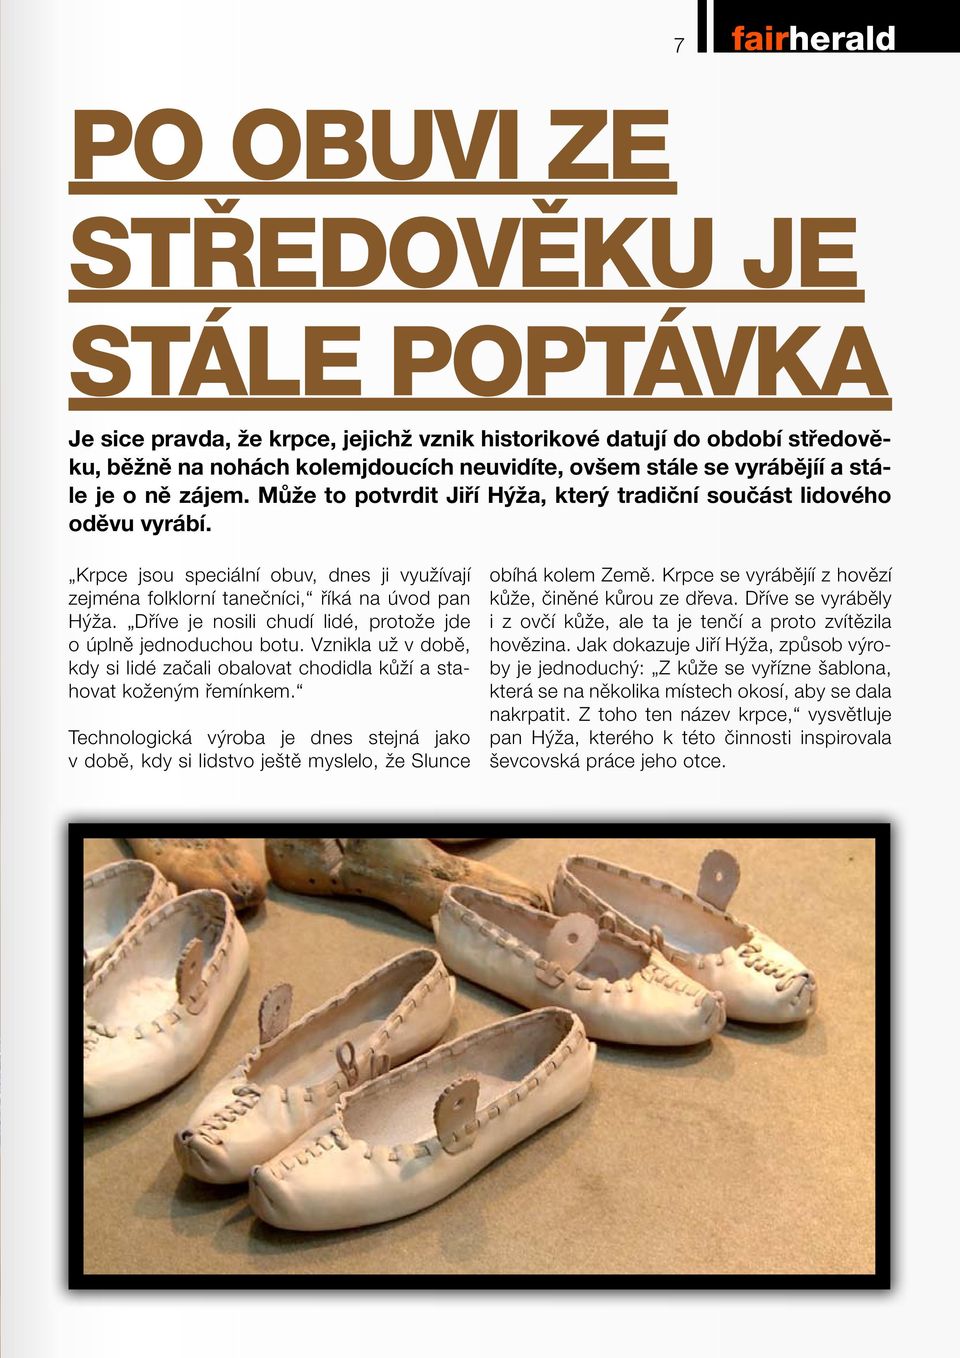 Krpce jsou speciální obuv, dnes ji využívají zejména folklorní tanečníci, říká na úvod pan Hýža. Dříve je nosili chudí lidé, protože jde o úplně jednoduchou botu.